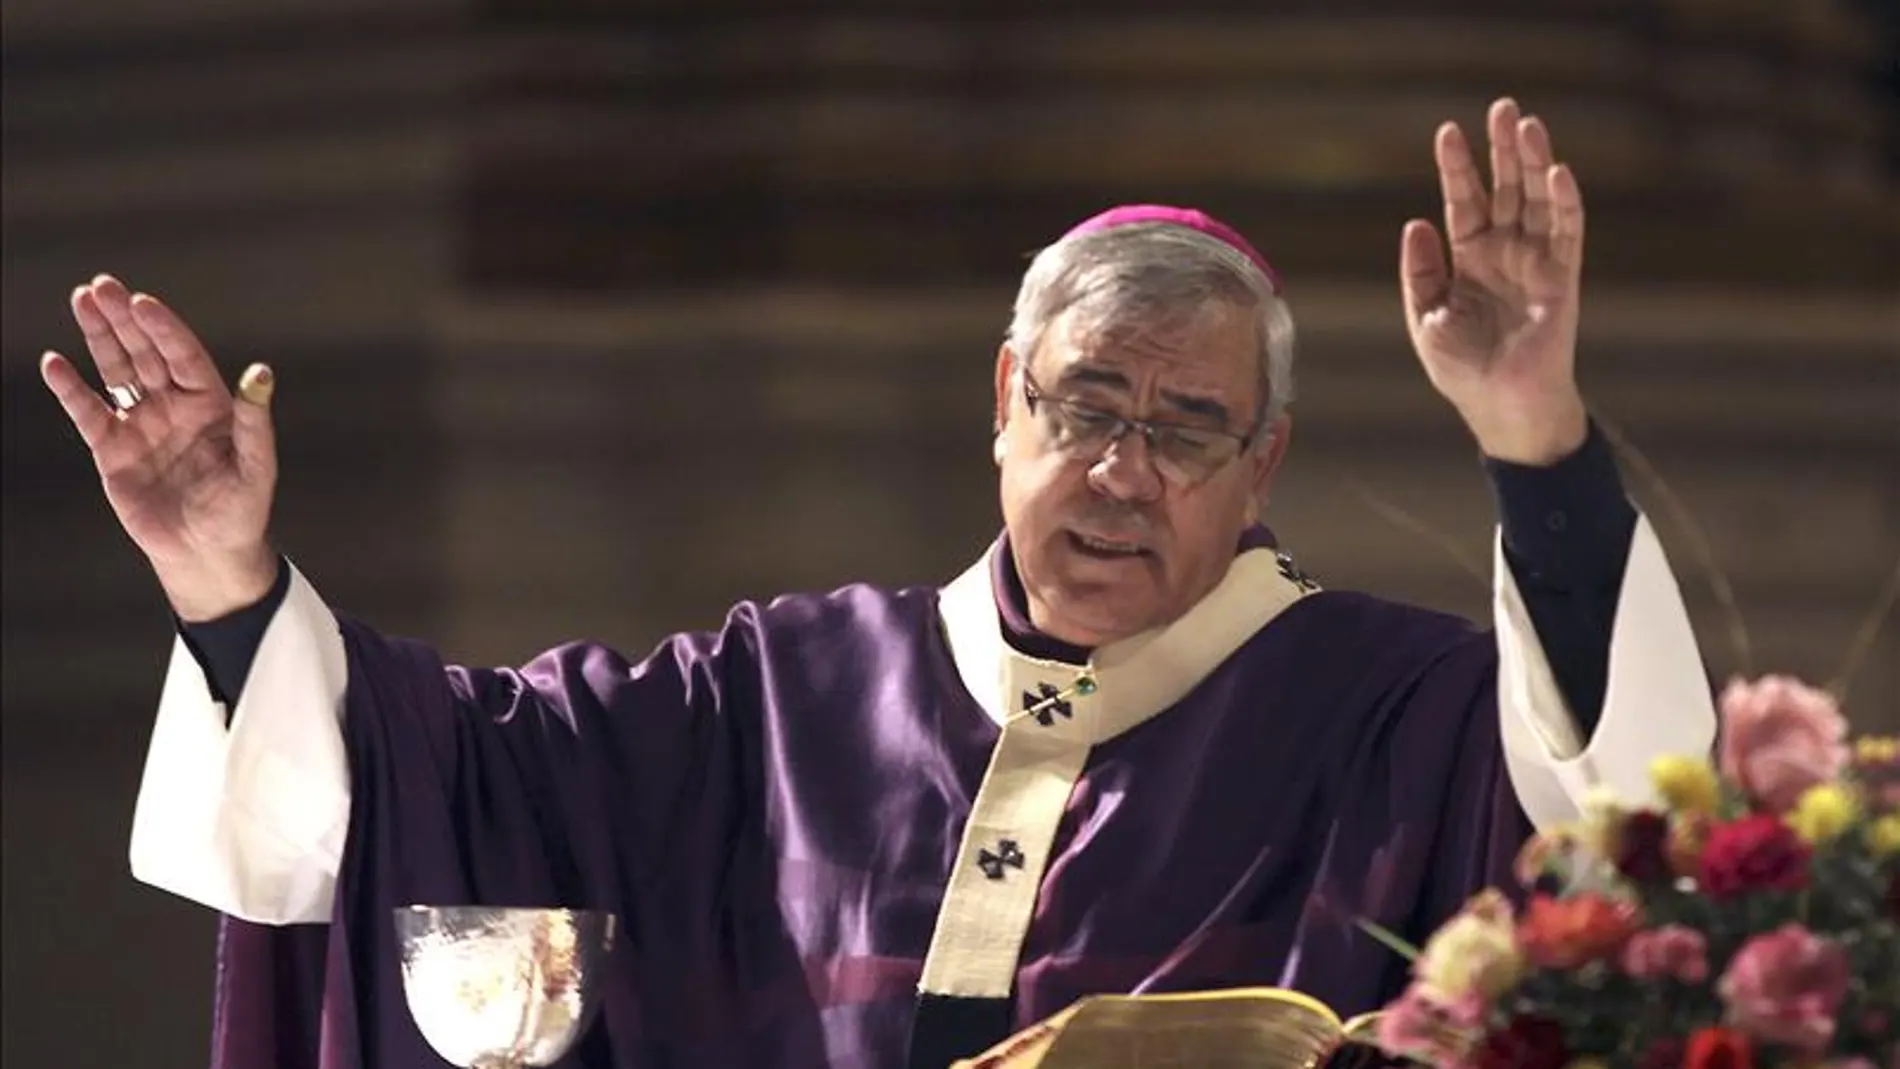 El juez da un ultimátum al arzobispo de Granada para que remita la documentación